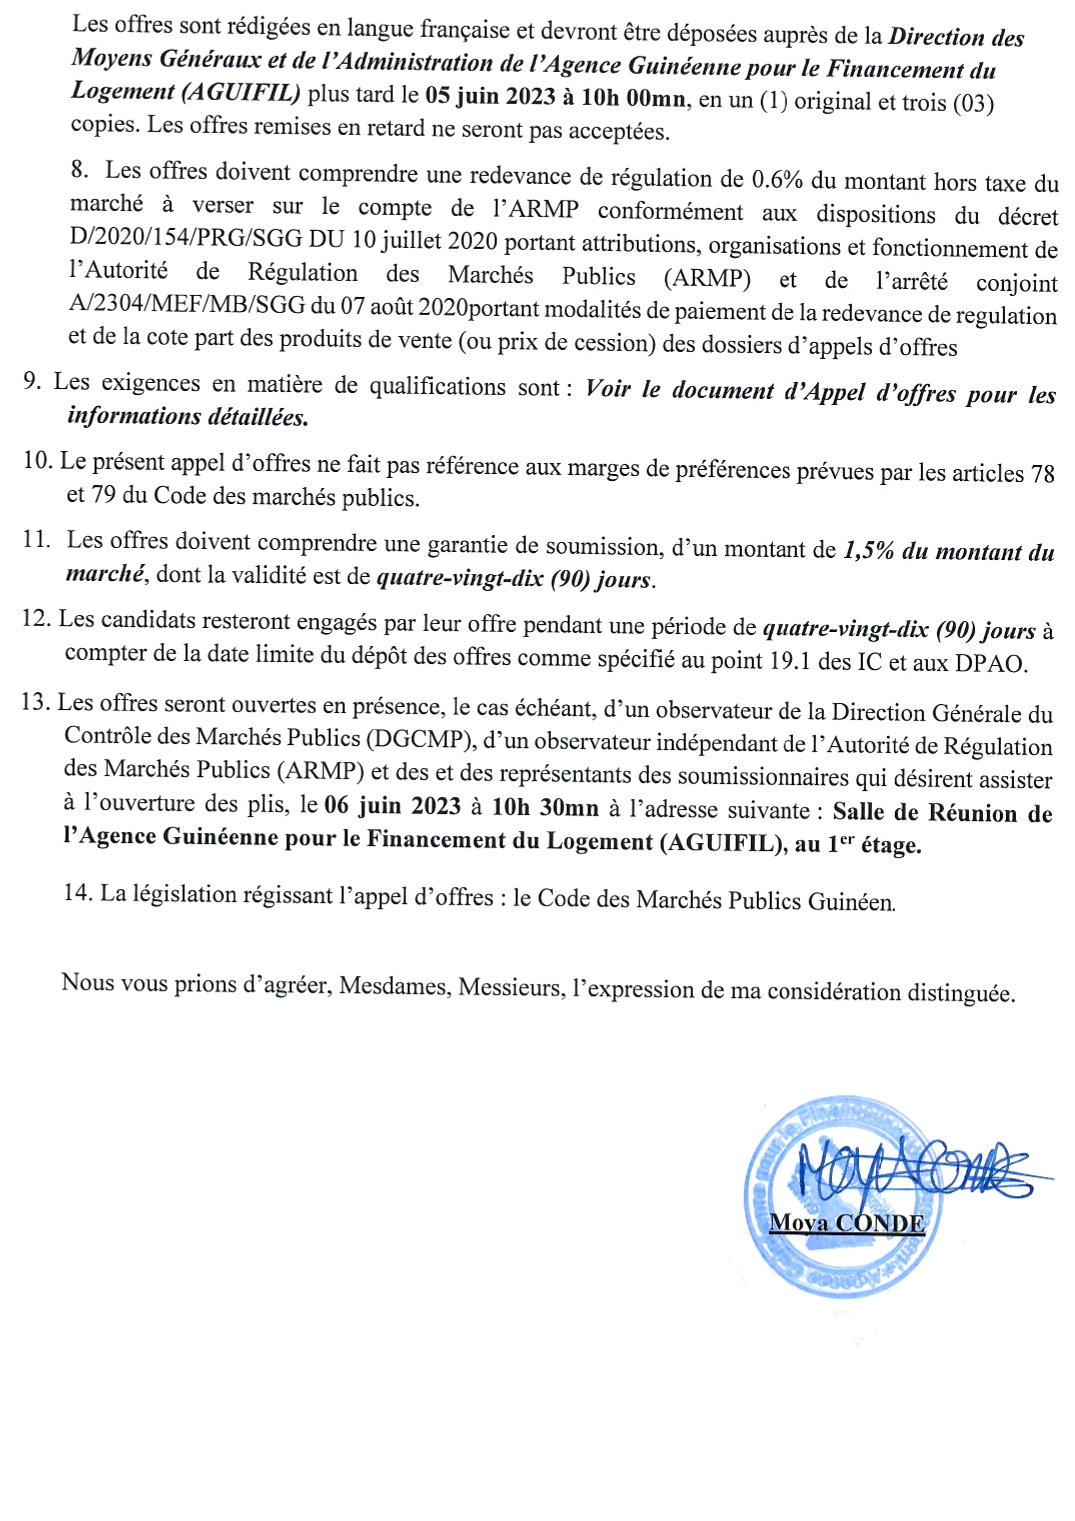 Invitation à soumissionner dans le cadre de l'Appel d'Offres Ouvert relatif à l'achat de fournitures internet pour l'Agence Guinéenne pour le Financement du Logement (A GUIFIL) | page 2